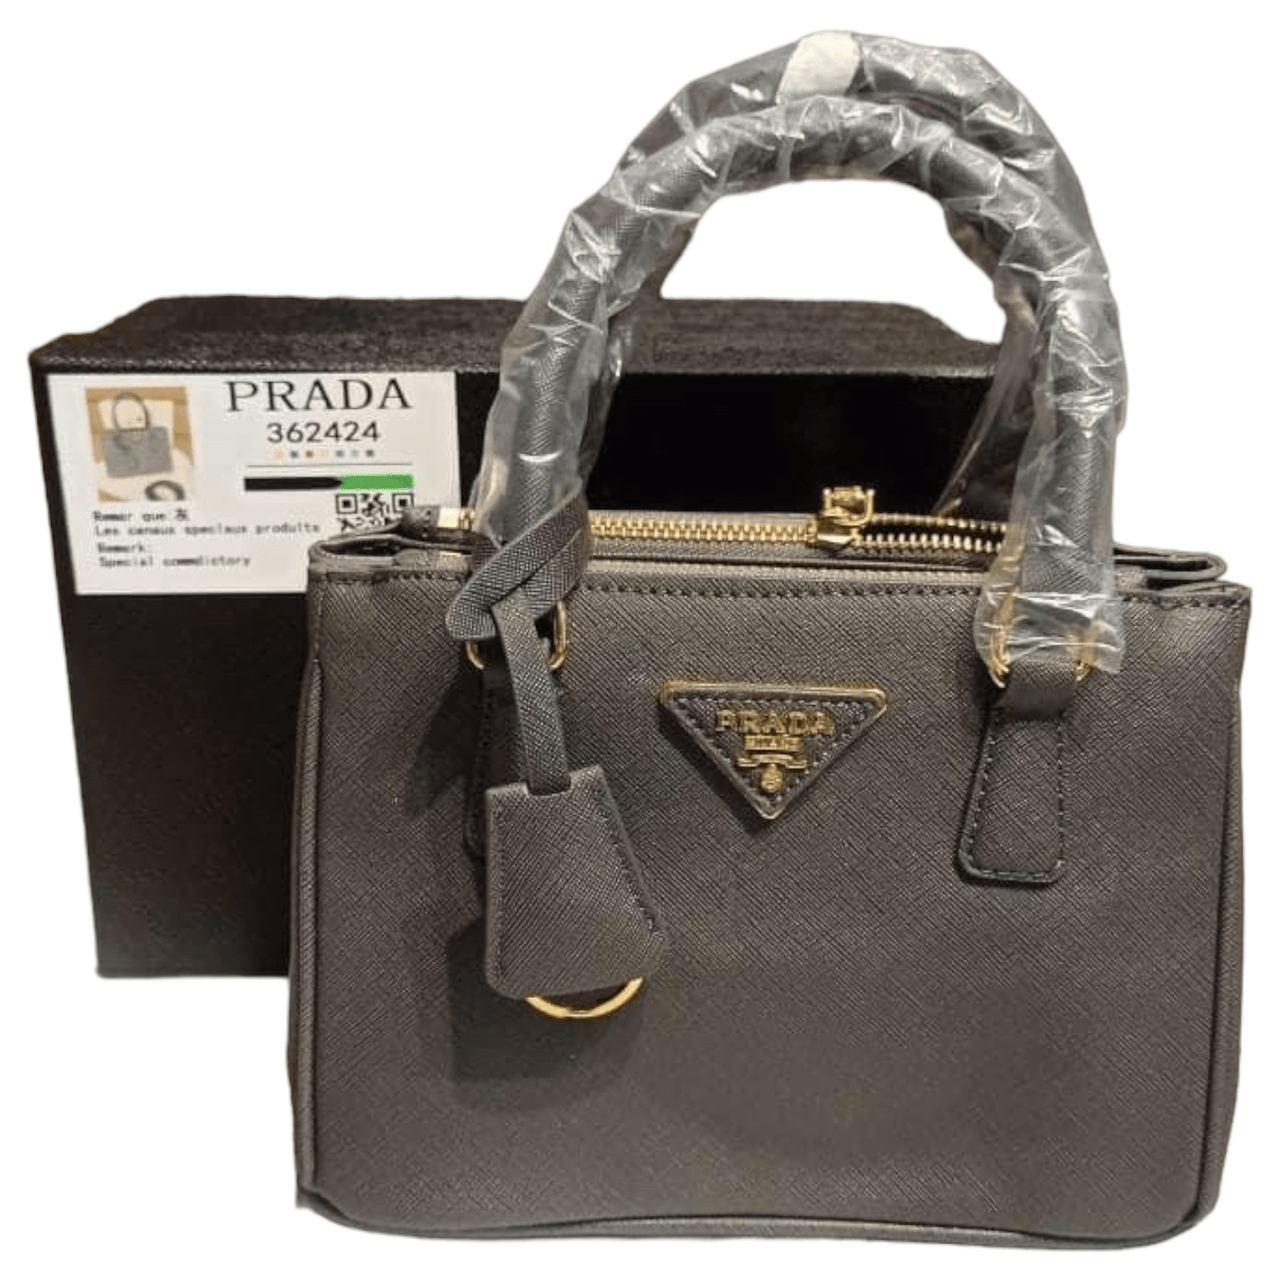 The Bag Couture Handbags, Wallets & Cases PRADA Galleria Luxe Du Jour Small Safiano Handbag Grey